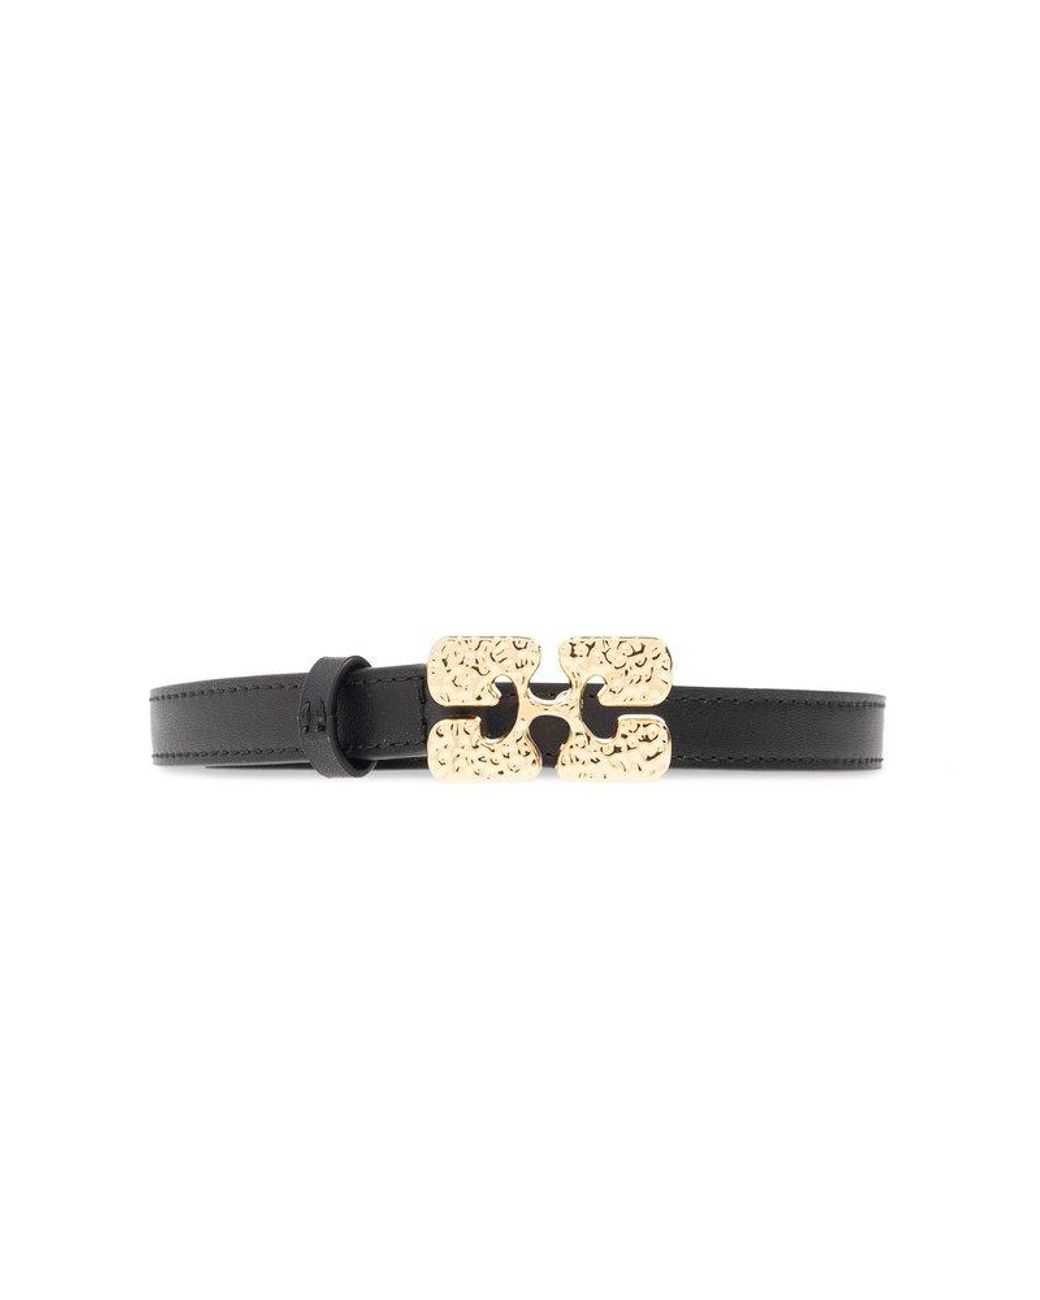 Women's Louis Vuitton Bracelets from C$249